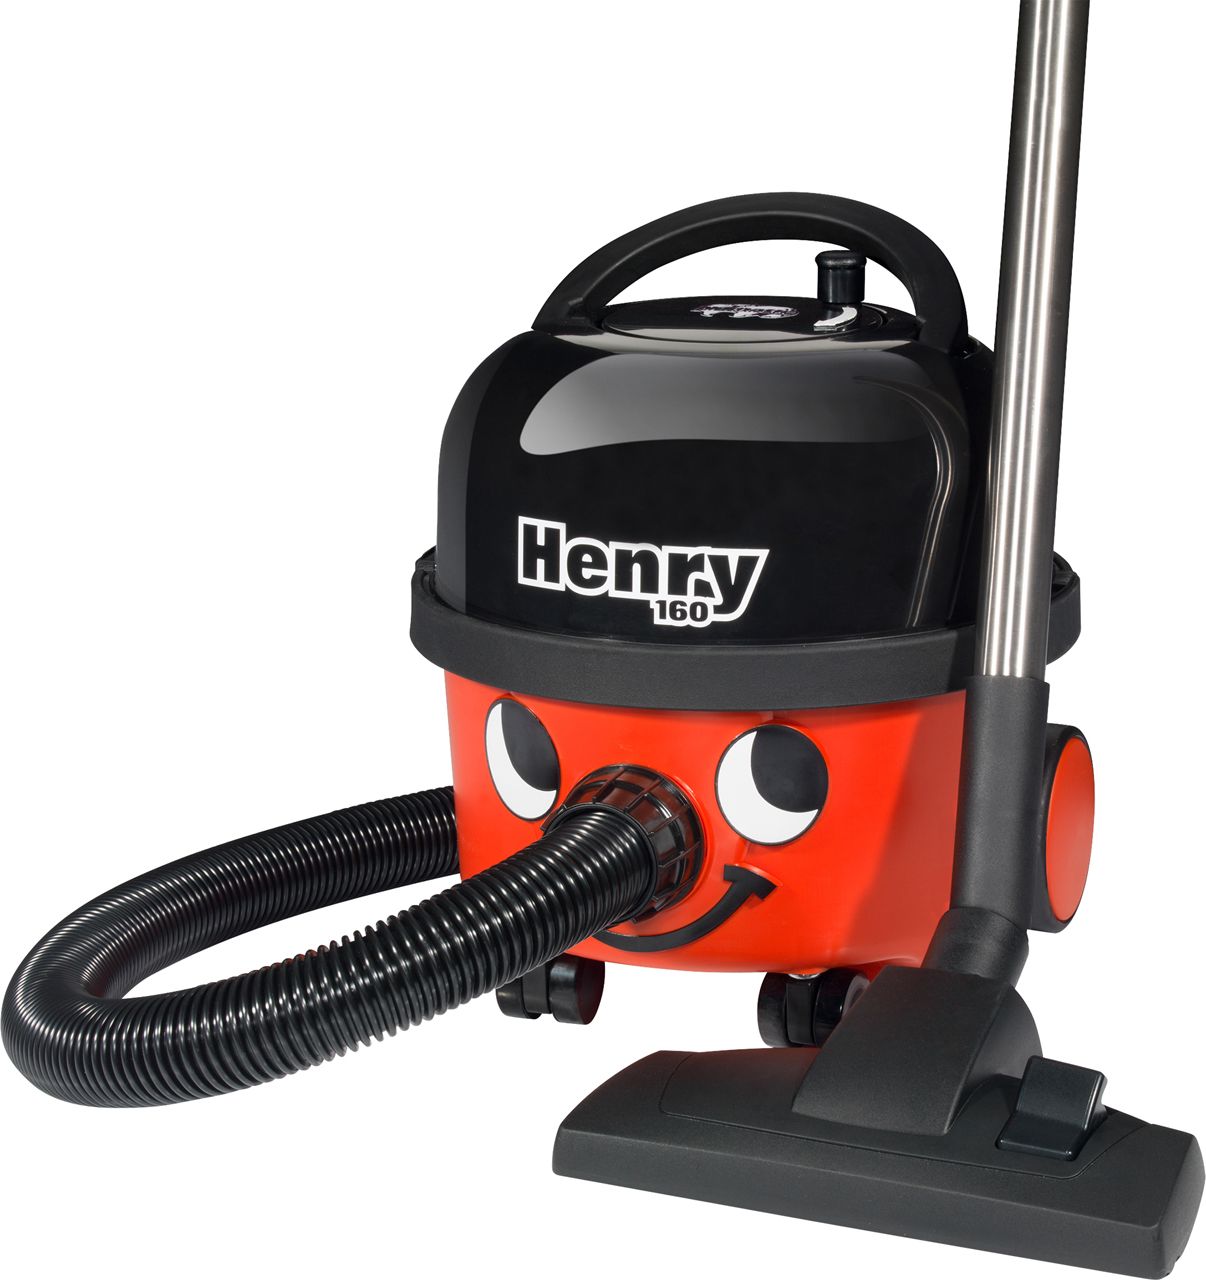 Henry HVR160-11 Cylinder Vacuum Cleaner, Red